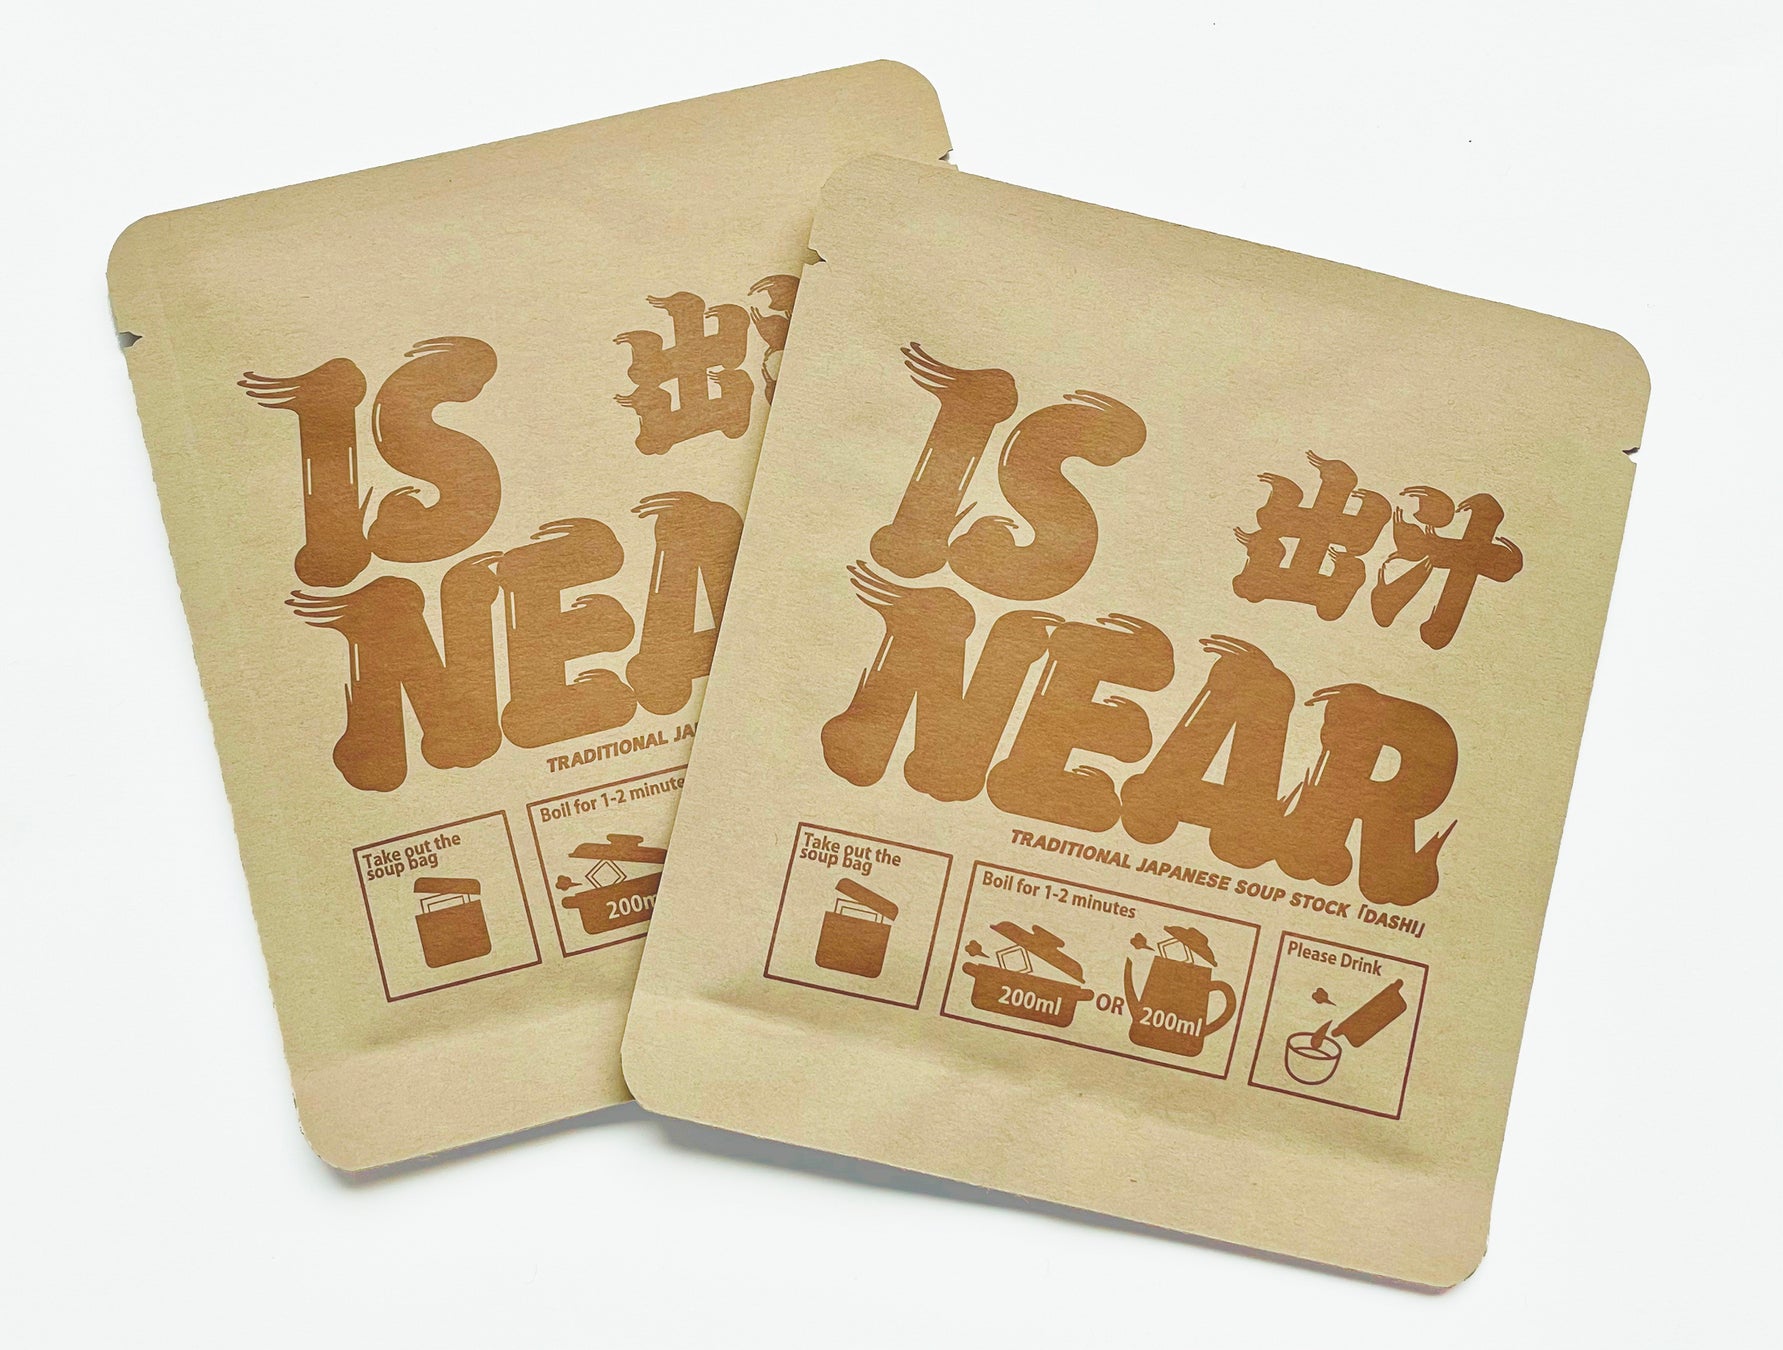 「出汁 IS NEAR」発売開始。気軽に飲める日本のお出汁。手軽な個包装パックで新登場。